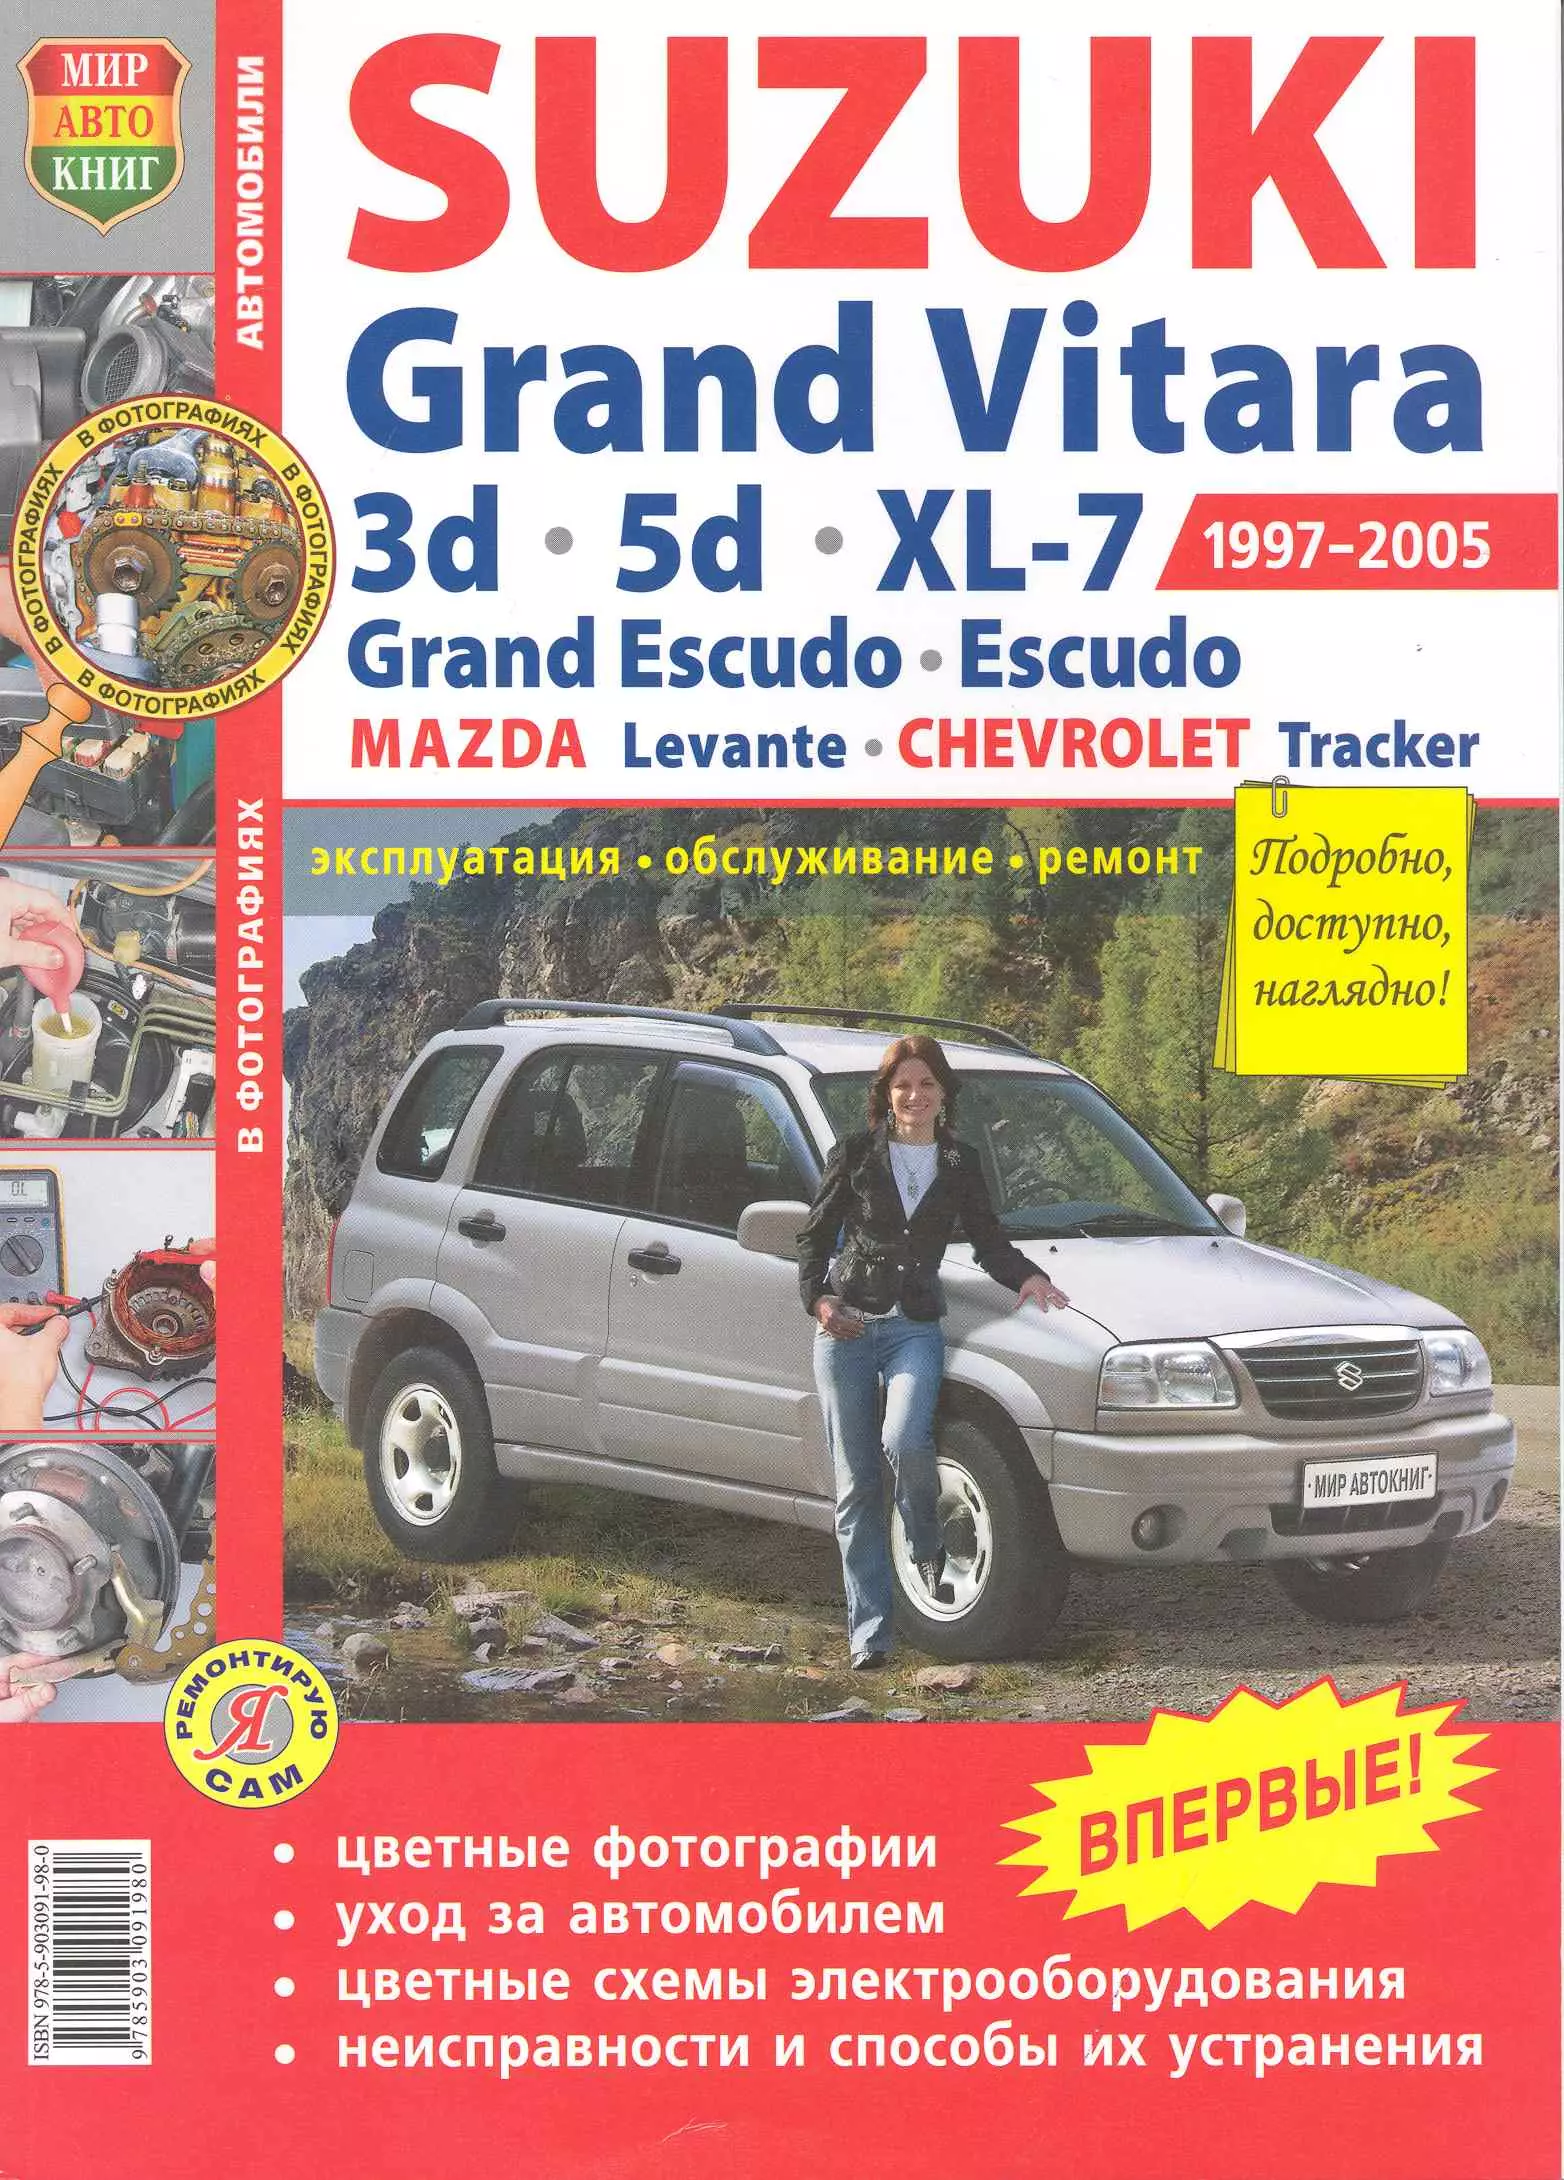 Гринев Константин - Автомобили Suzuki Grand Vitara (1997-2005). Эксплуатация, обслуживание, ремонт. Иллюстрированное Практическое пособие